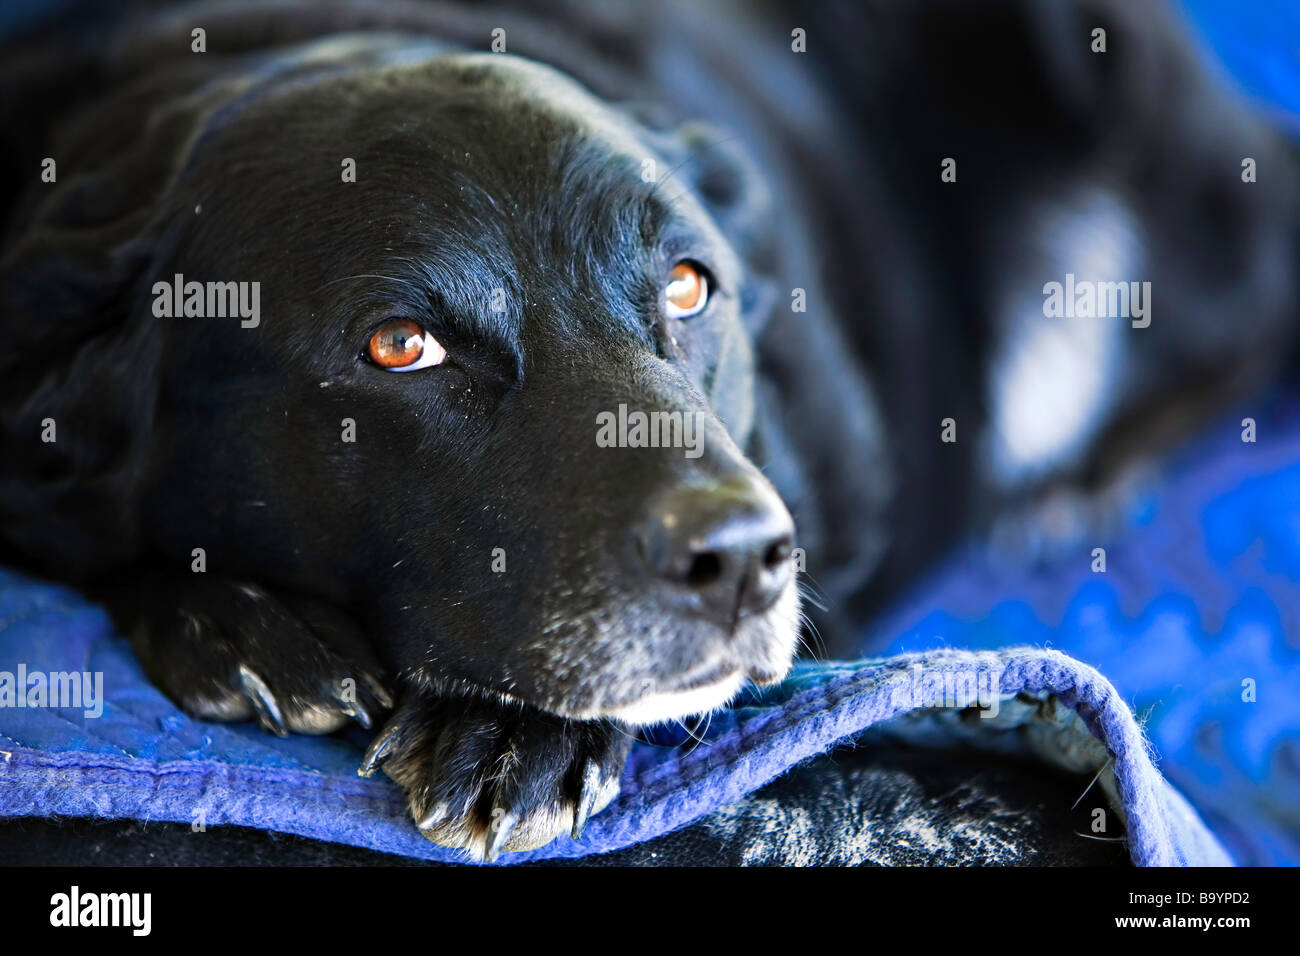 Masset un lindo perro, Canis familiaris, en Brantford, Ontario, Canadá. Foto de stock